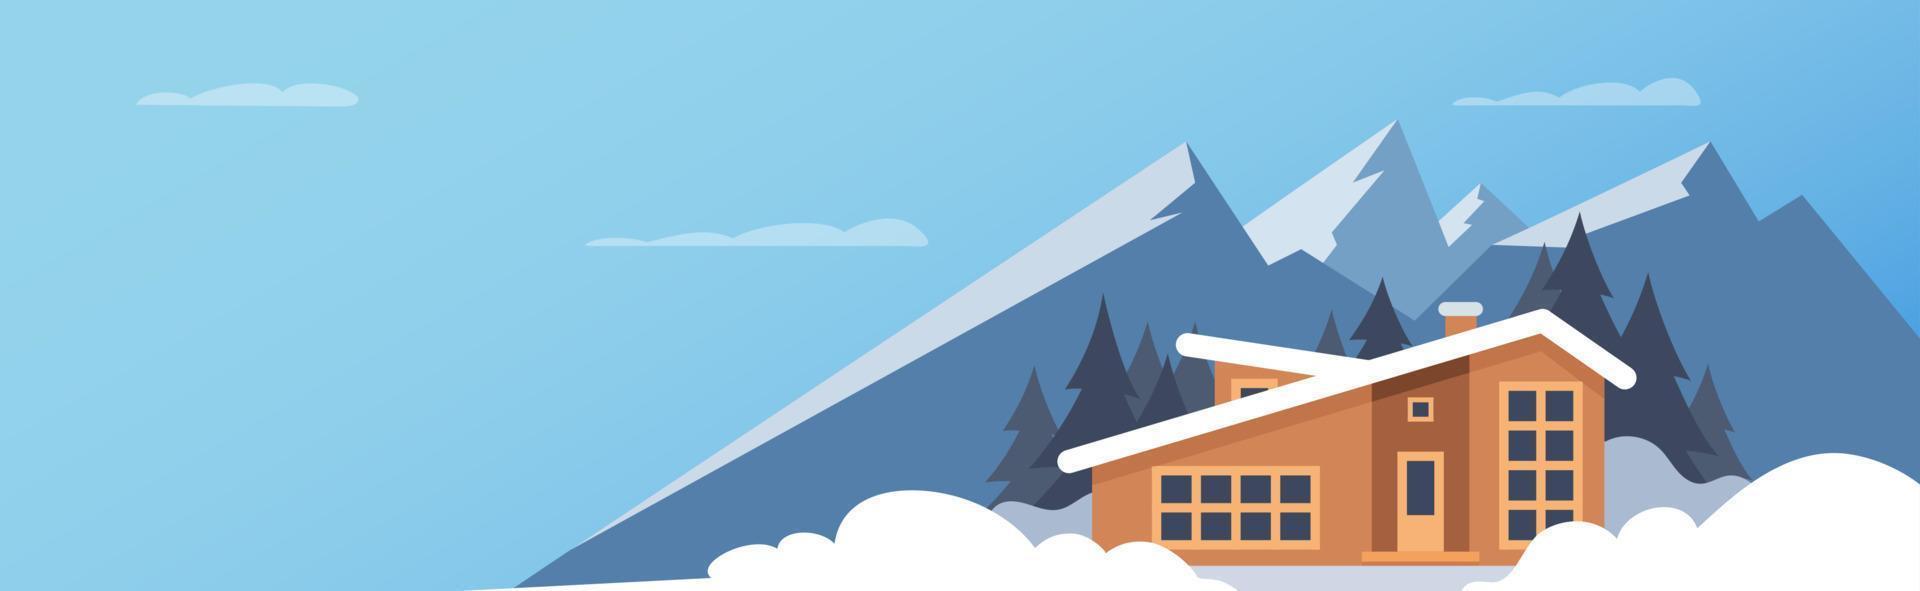 sport d'hiver. paysage de montagne d'hiver avec grande maison pour les touristes. vacances d'hiver à la montagne, stations de ski, locations de maisons. illustration plate de vecteur. vecteur